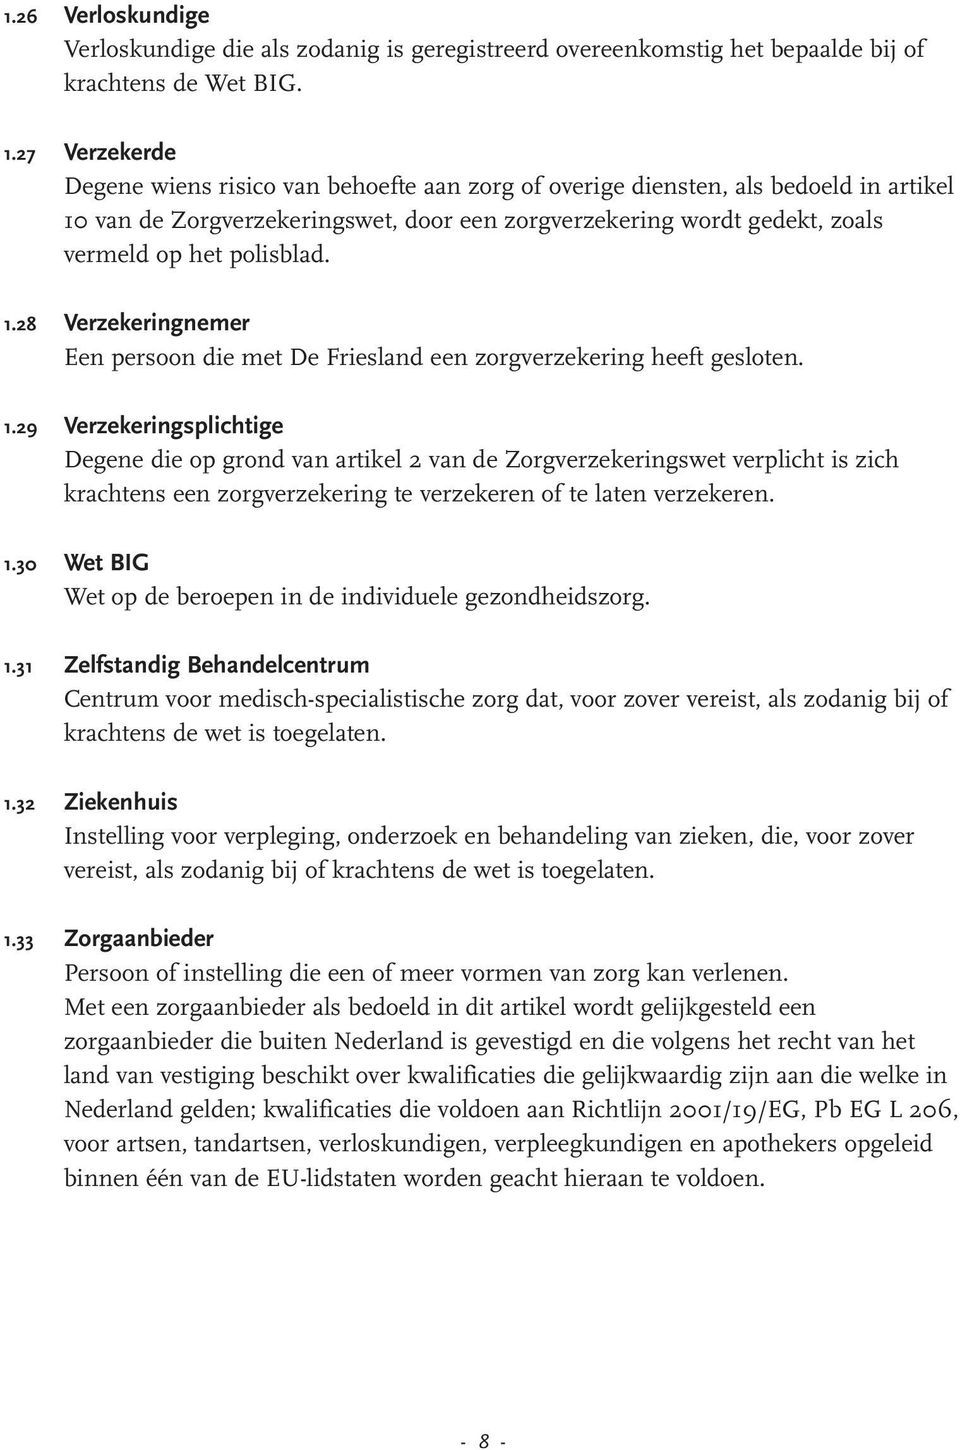 polisblad. 1.28 Verzekeringnemer Een persoon die met De Friesland een zorgverzekering heeft gesloten. 1.29 Verzekeringsplichtige Degene die op grond van artikel 2 van de Zorgverzekeringswet verplicht is zich krachtens een zorgverzekering te verzekeren of te laten verzekeren.